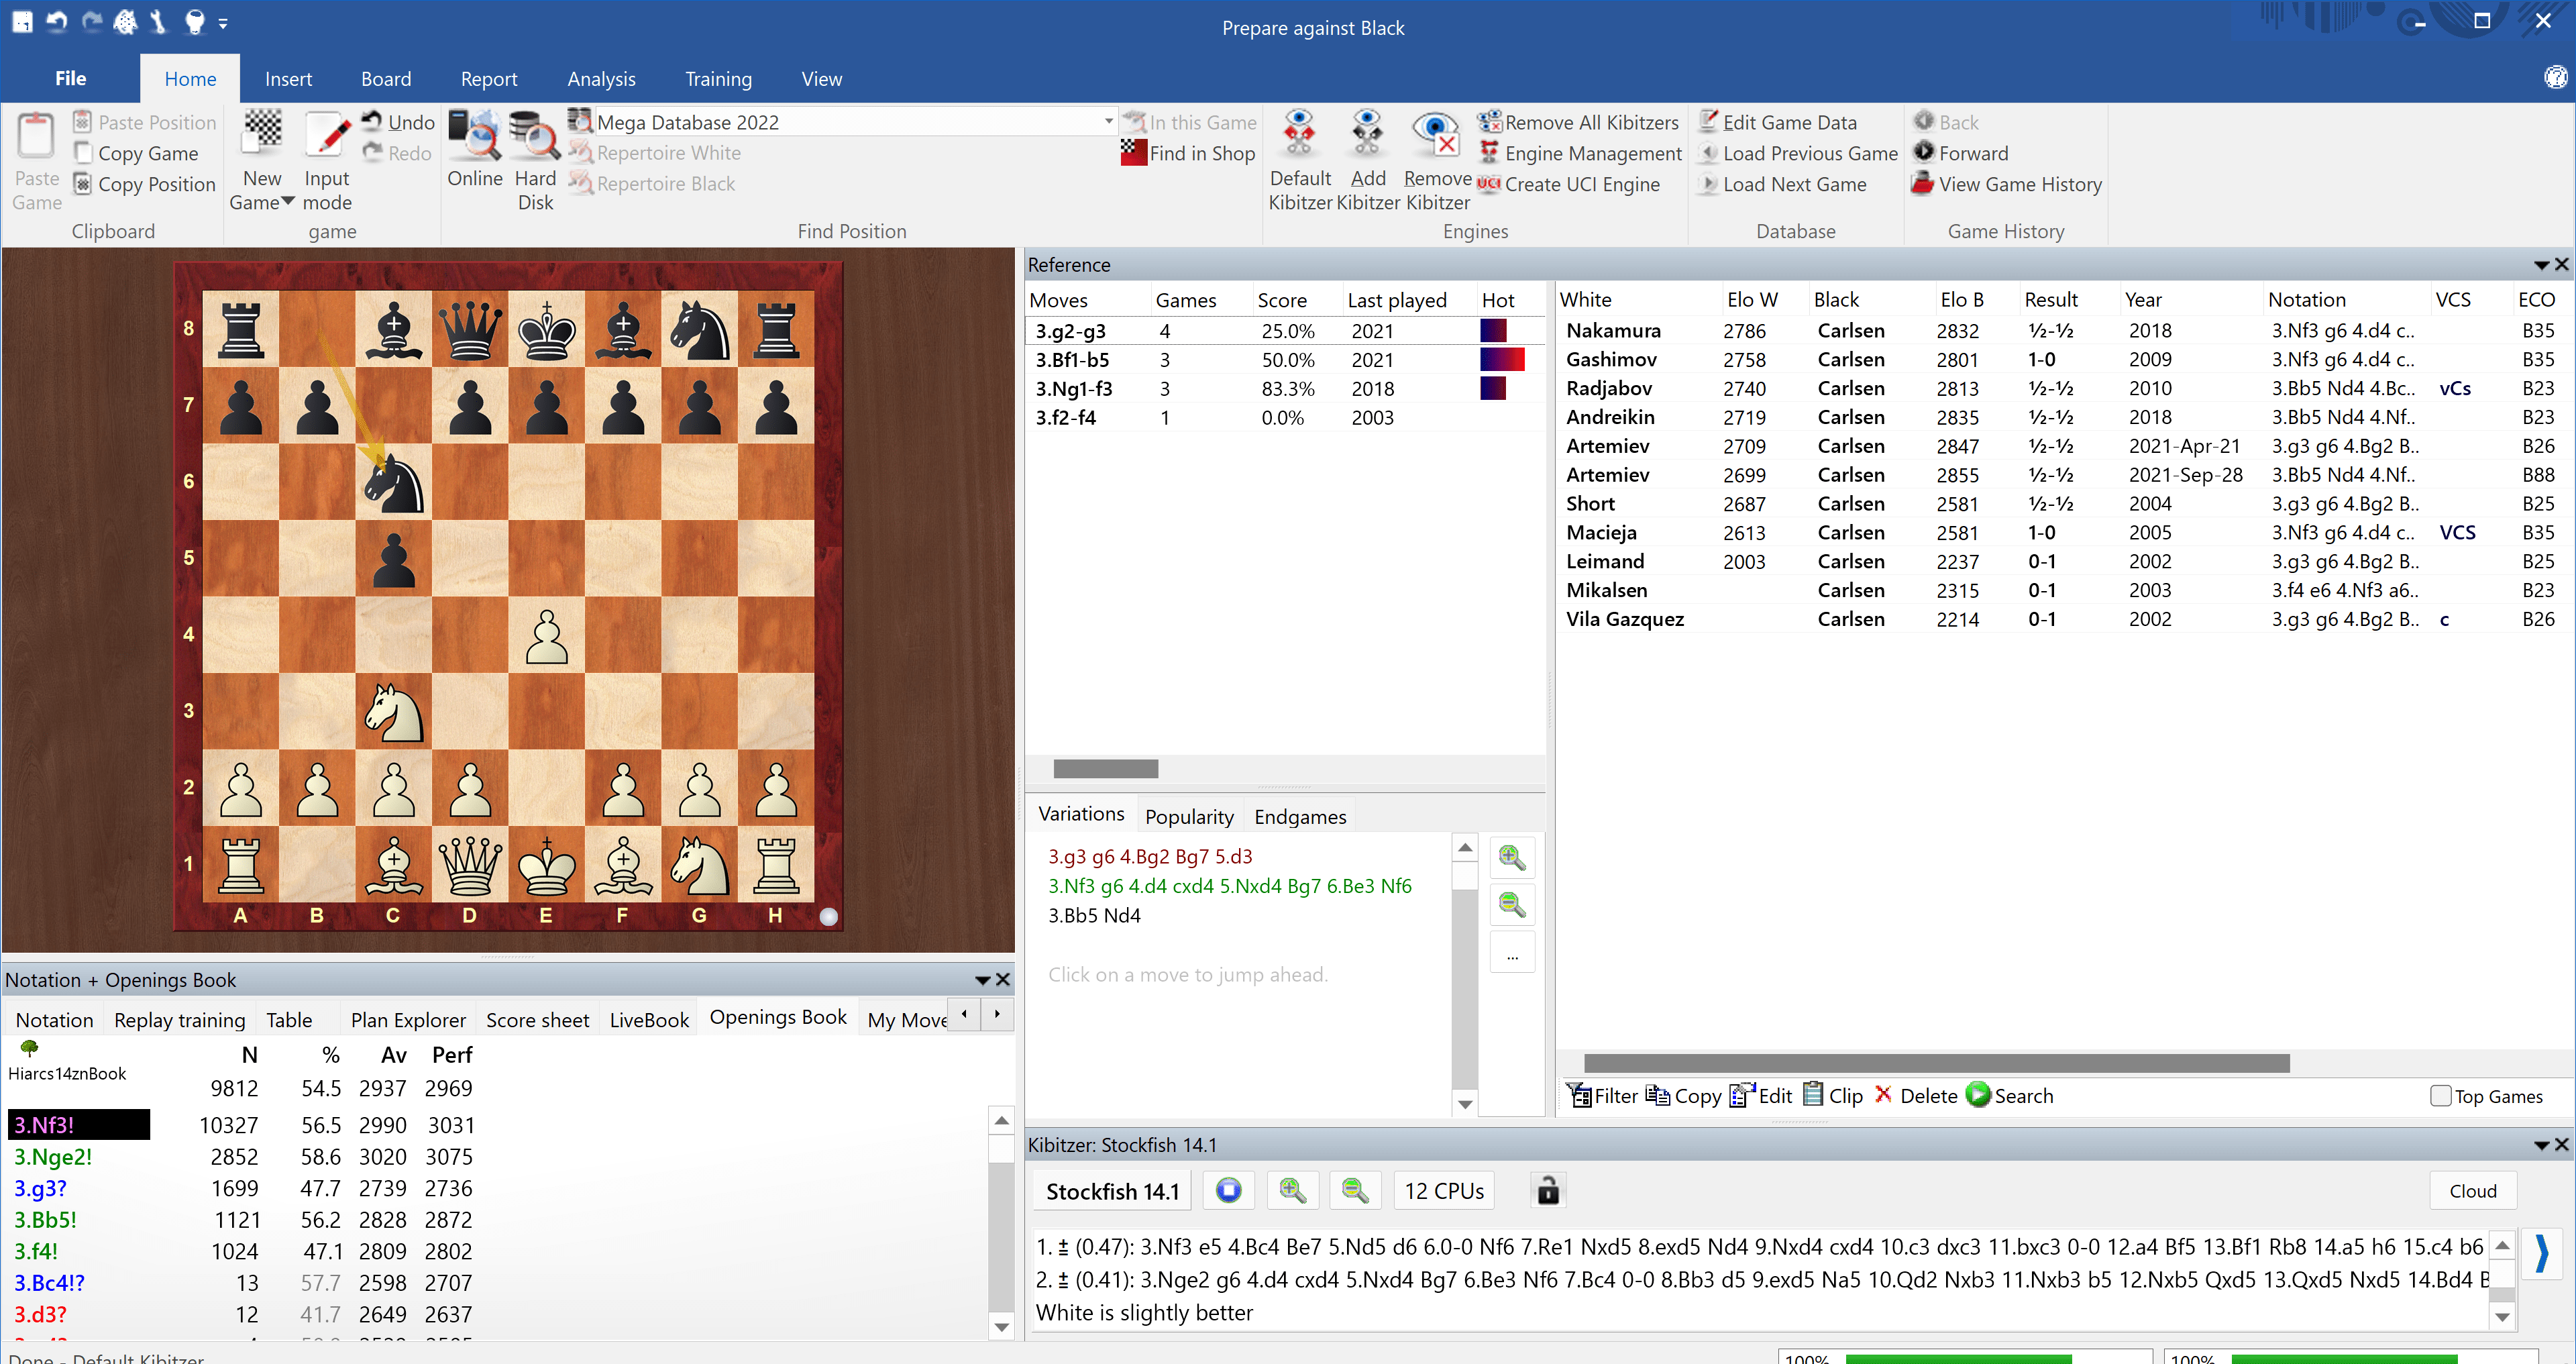 ChessBase 16 - program only